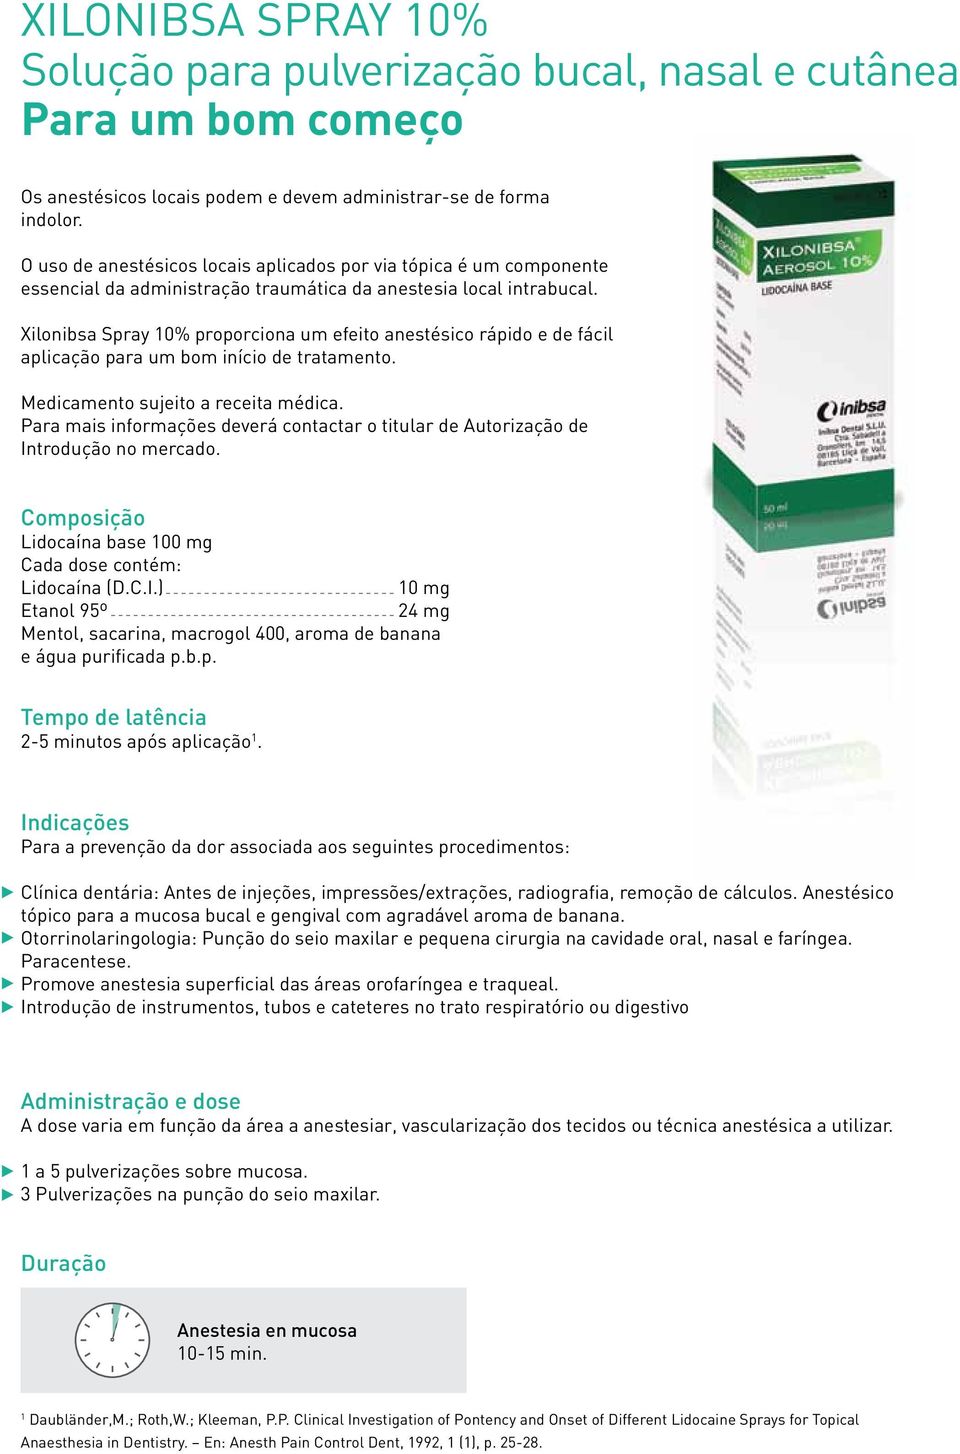 Xilonibsa Spray 10% proporciona um efeito anestésico rápido e de fácil aplicação para um bom início de tratamento. Medicamento sujeito a receita médica.